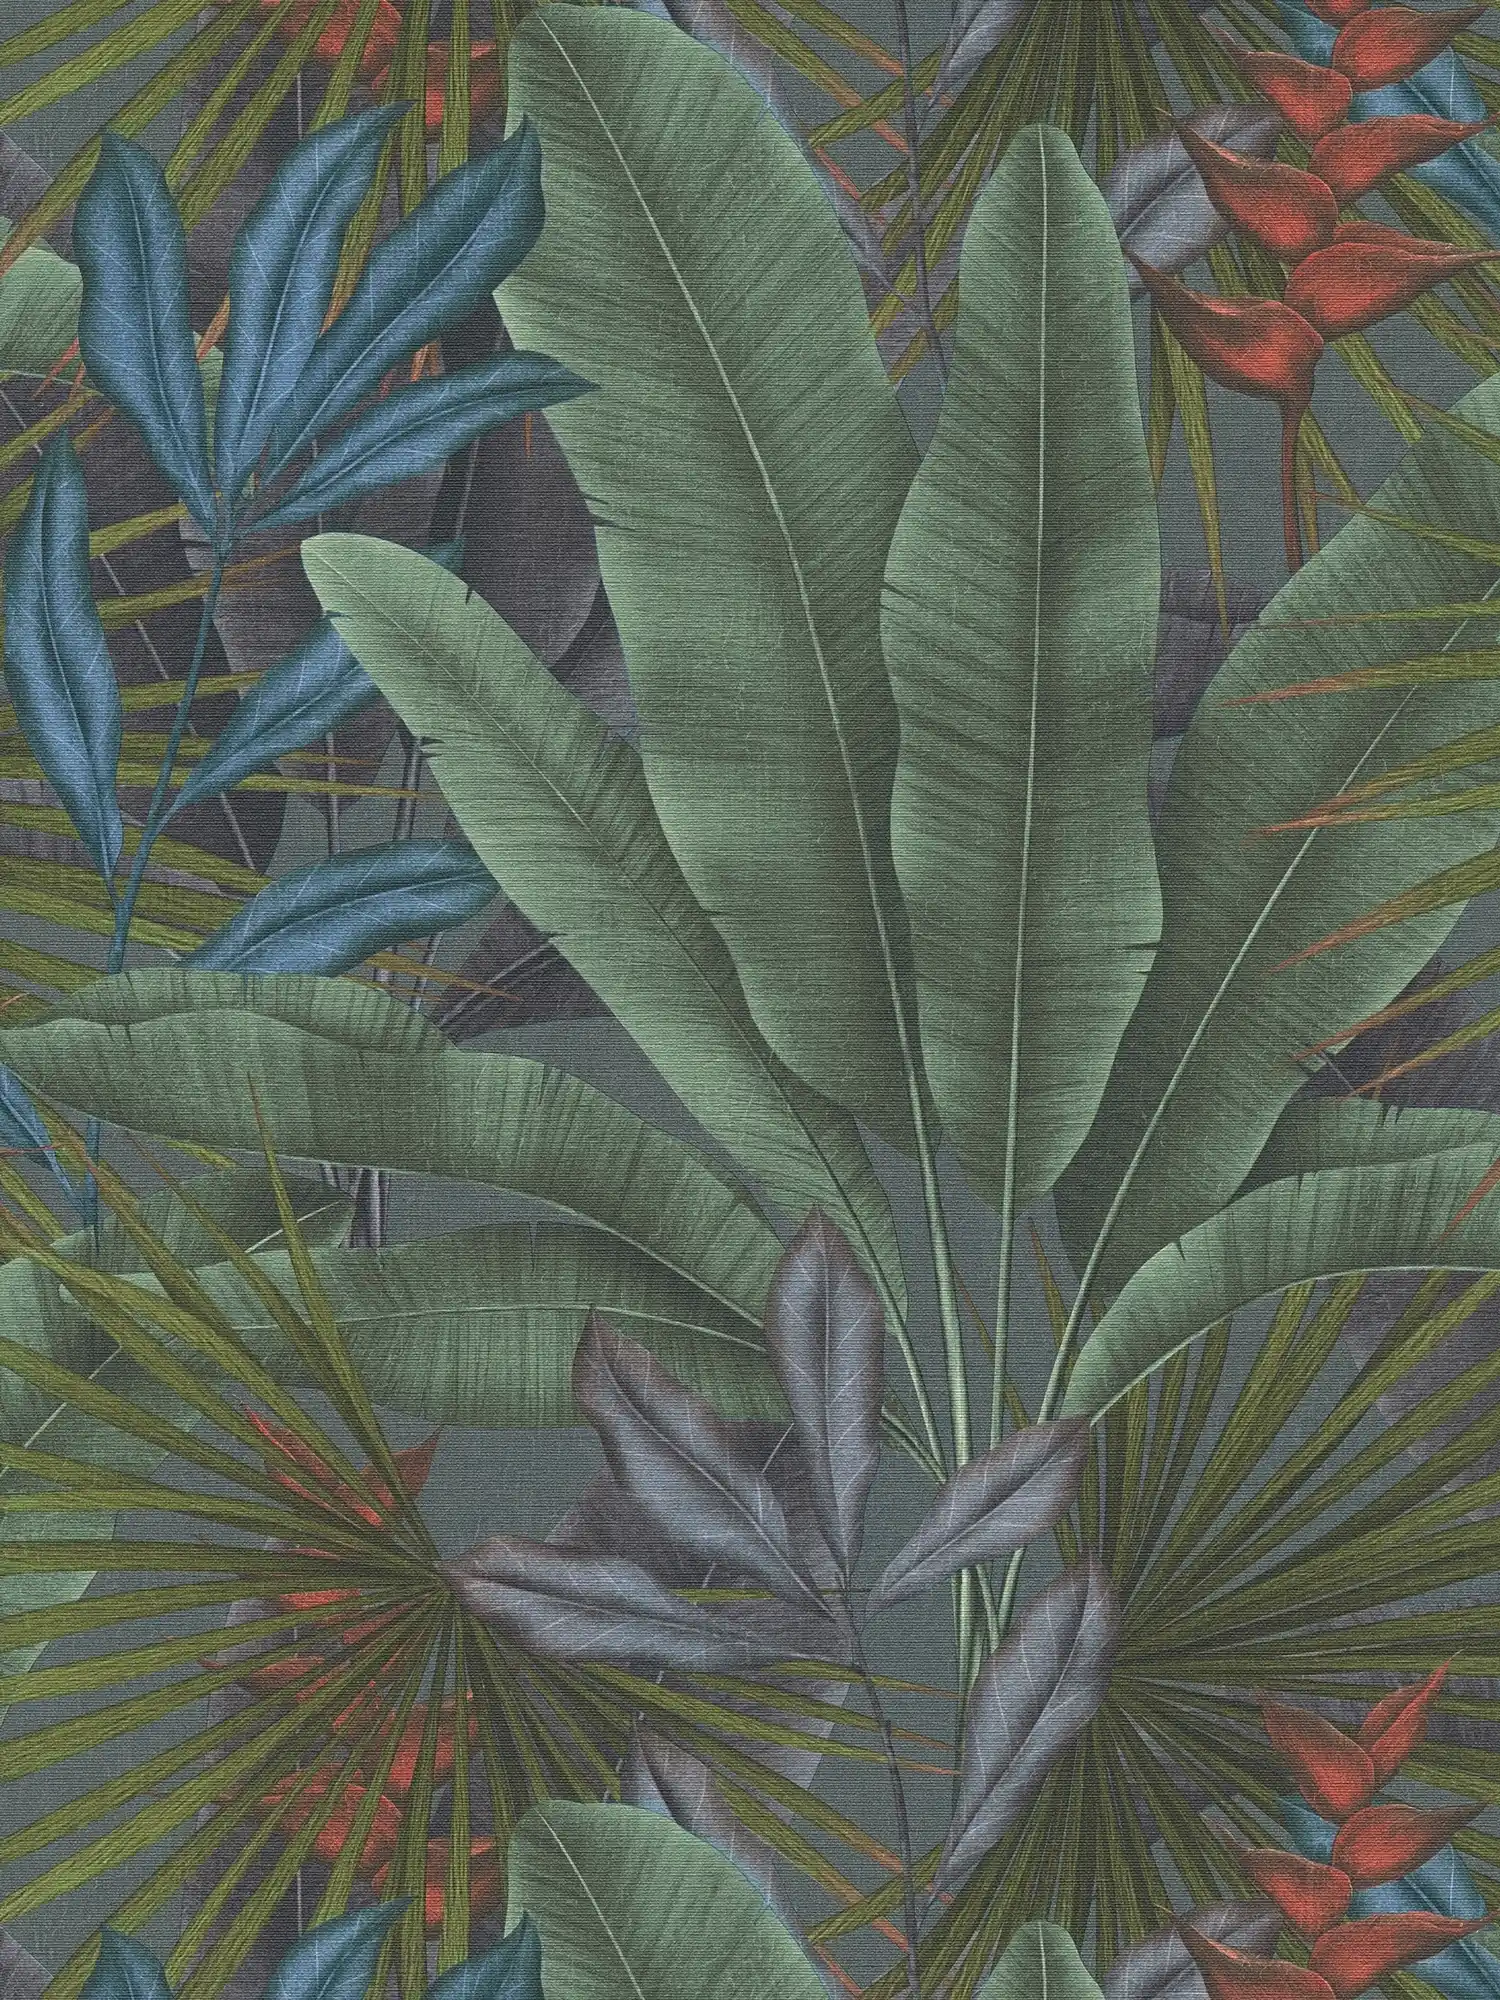 Vliesbehang met jungle bladmotief en kleurrijke accenten - grijs, groen, rood
